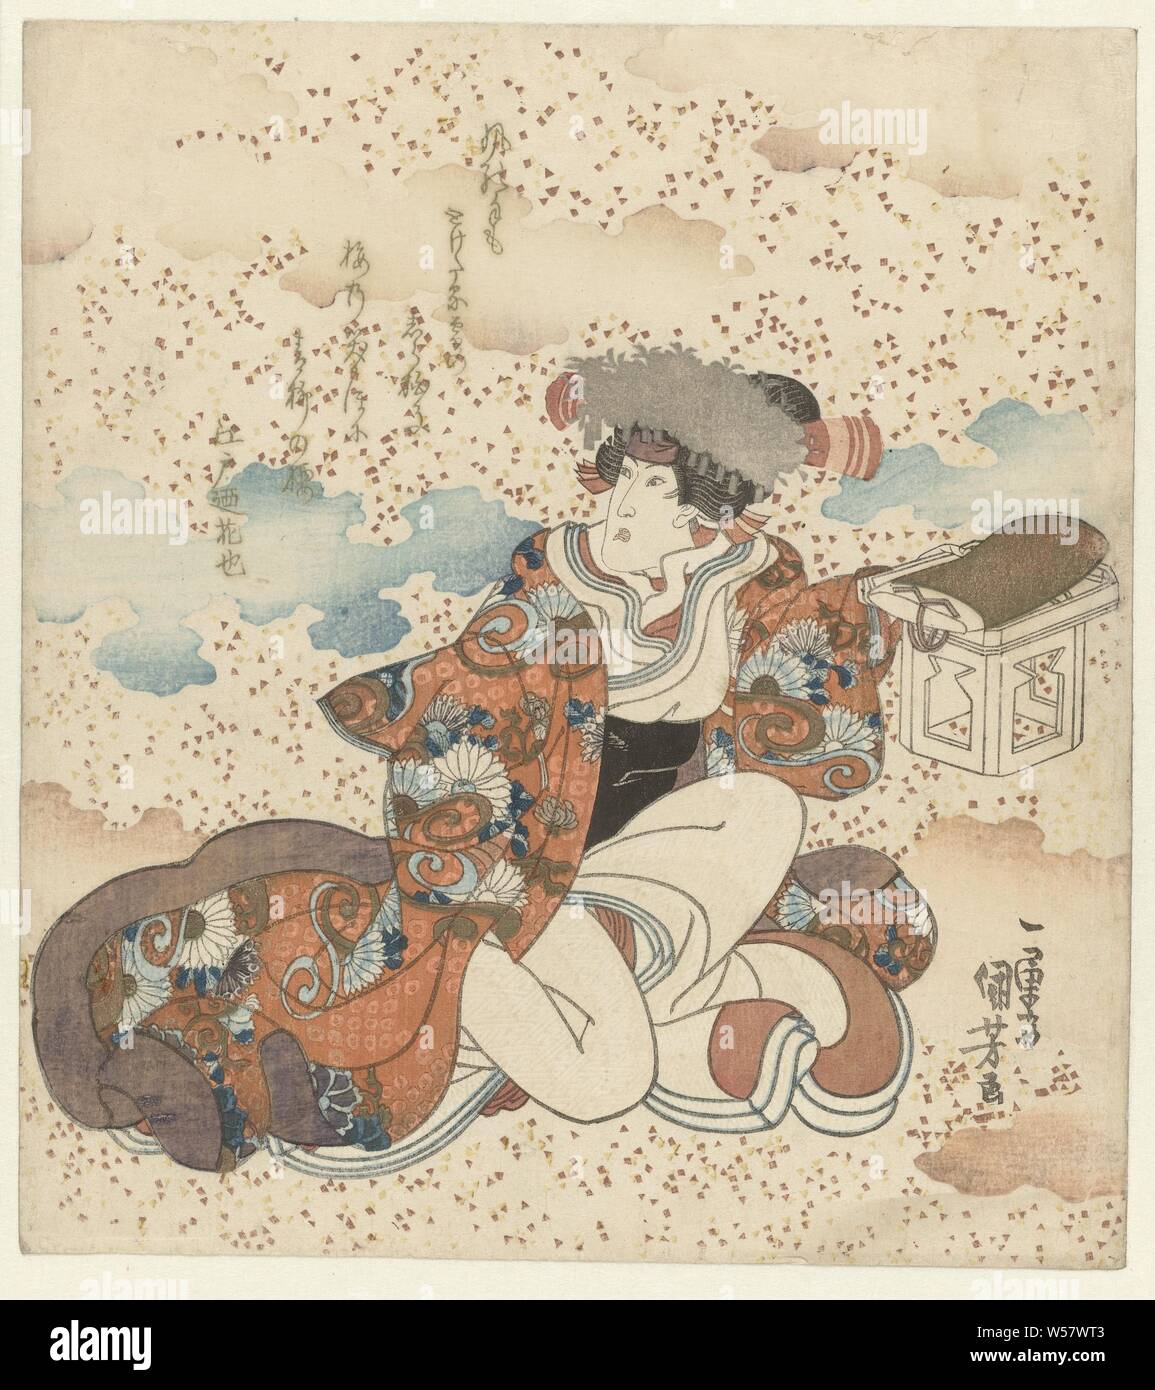 Kniende Frau mit aufopfernder Tabelle, der Schauspieler Iwai Hanshirô VI (1799-1836) in der Rolle der Frau, mit einer aufopferungsvollen Tabelle in der linken Hand. Vor dem Hintergrund der farbigen Wolken und Spots, Nachahmung der alten Gemälden. Mit einem Gedicht. Rechte Blatt ein Triptychon., Utagawa Kuniyoshi (auf Objekt erwähnt), Japan, C. 1830, Papier, Farbholzschnitt, H 207 mm x B 189 mm Stockfoto